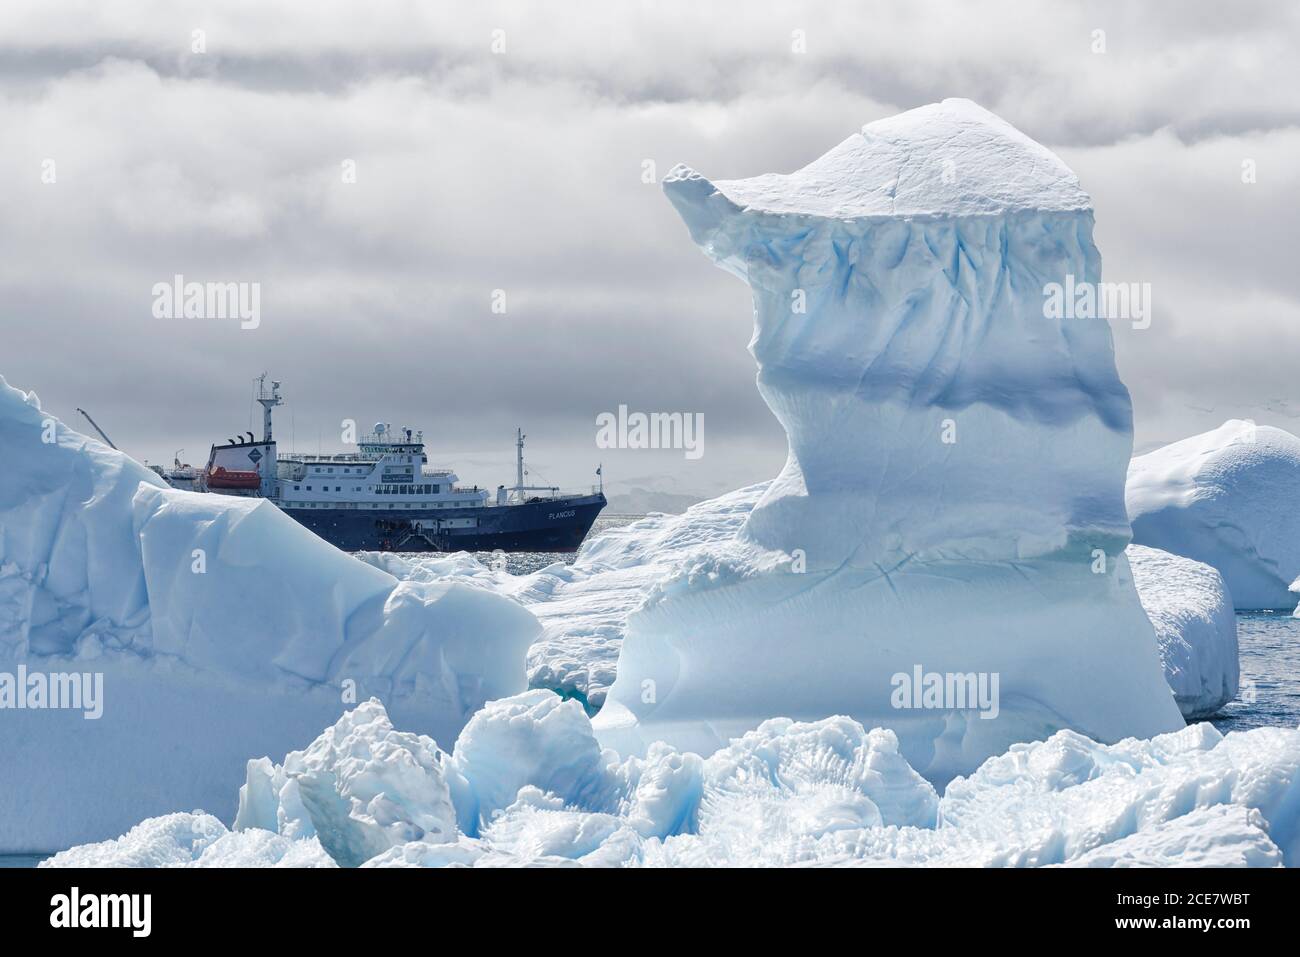 Vue entre deux sommets enneigés et un petit bateau de croisière, la péninsule antarctique, Antarktika occidentale Banque D'Images